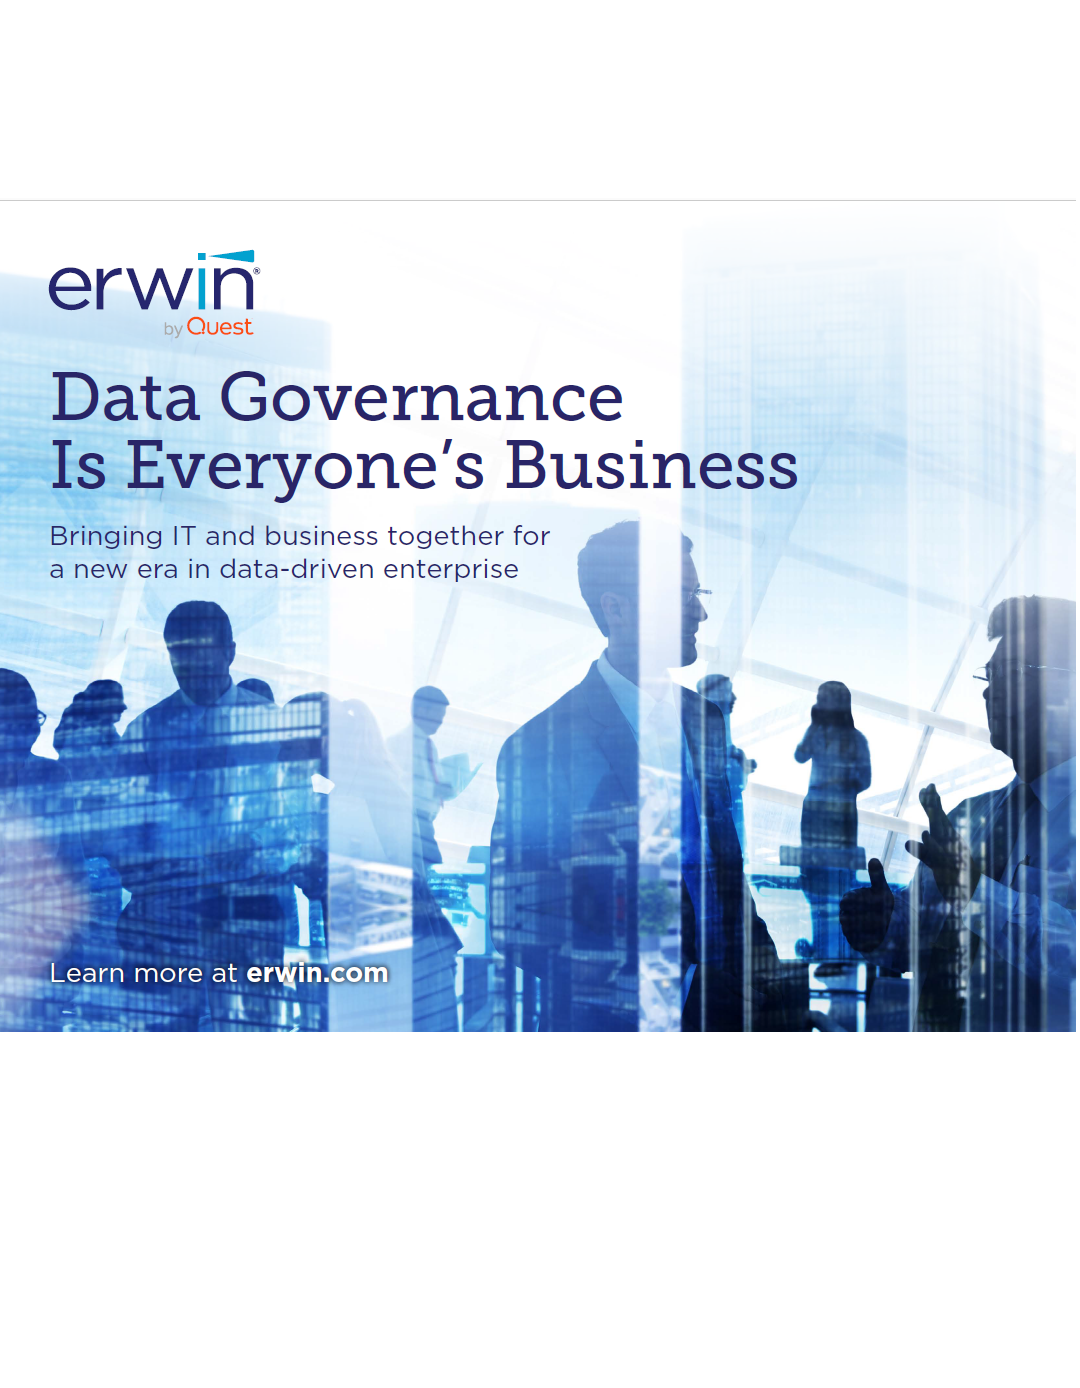 Daten-Governance  geht jeden etwas an  Zusammenführung von IT und Business für eine neue Ära des datengesteuerten Unternehmens